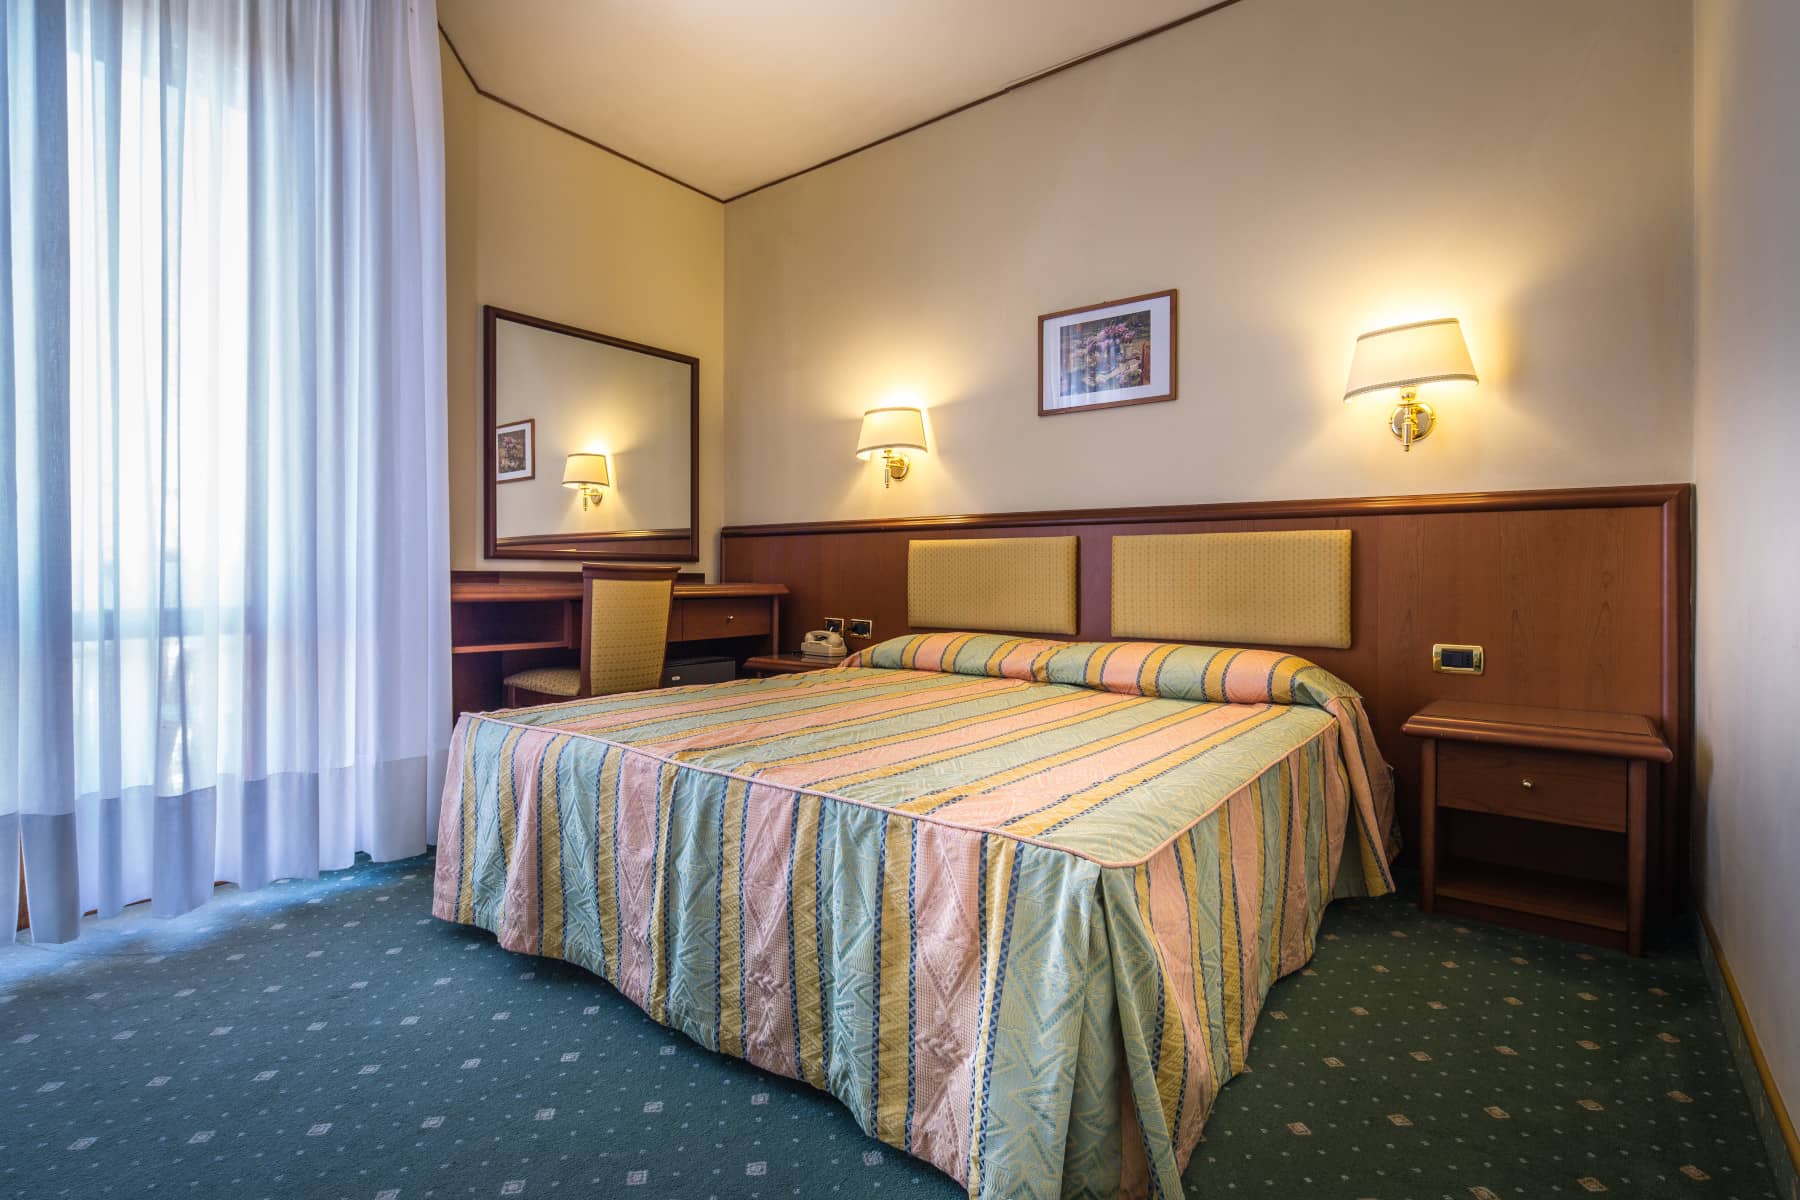 Camera doppia dell'hotel San Francisco a Lignano